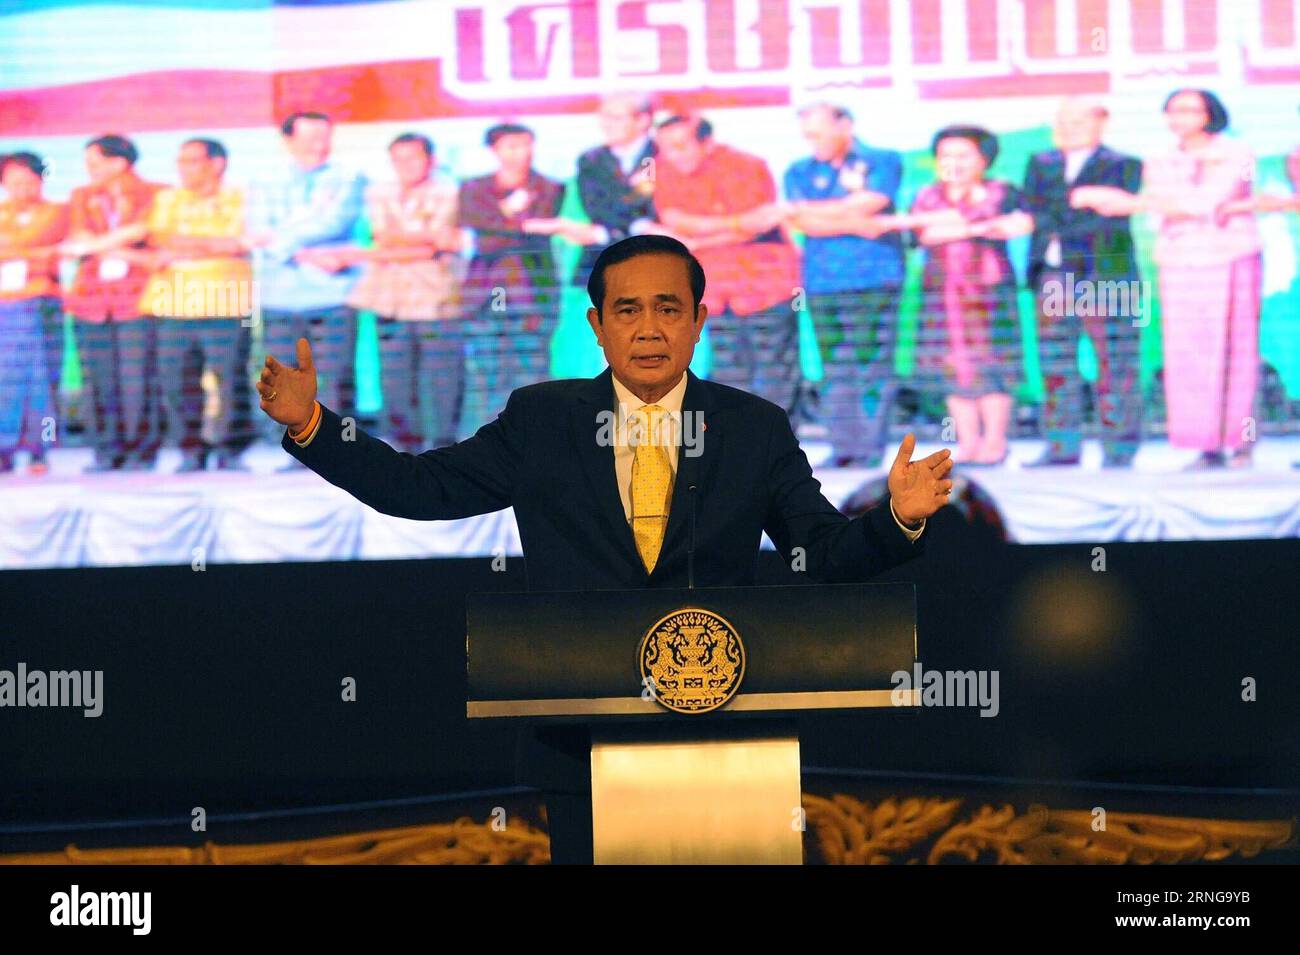 (160915) -- BANGKOK, 15. September 2016 -- der thailändische Premierminister Prayut Chan-o-cha spricht während einer Pressekonferenz über die Leistungen der Regierung in den letzten zwei Jahren im thailändischen Regierungsgebäude in Bangkok, der Hauptstadt Thailands, am 15. September 2016. Thailand könnte sich möglicherweise vom langjährigen Status eines Entwicklungslandes der Dritten Welt zu einem entwickelten Land der Ersten Welt aufrüsten, sagte der thailändische Premierminister Prayut Chan-o-cha am Donnerstag. (Syq) THAILAND-BANGKOK-PM-PRESSEKONFERENZ RachenxSageamsak PUBLICATIONxNOTxINxCHN 160915 Bangkok 15. September 2016 thailändische Premierminister Prayut C Stockfoto